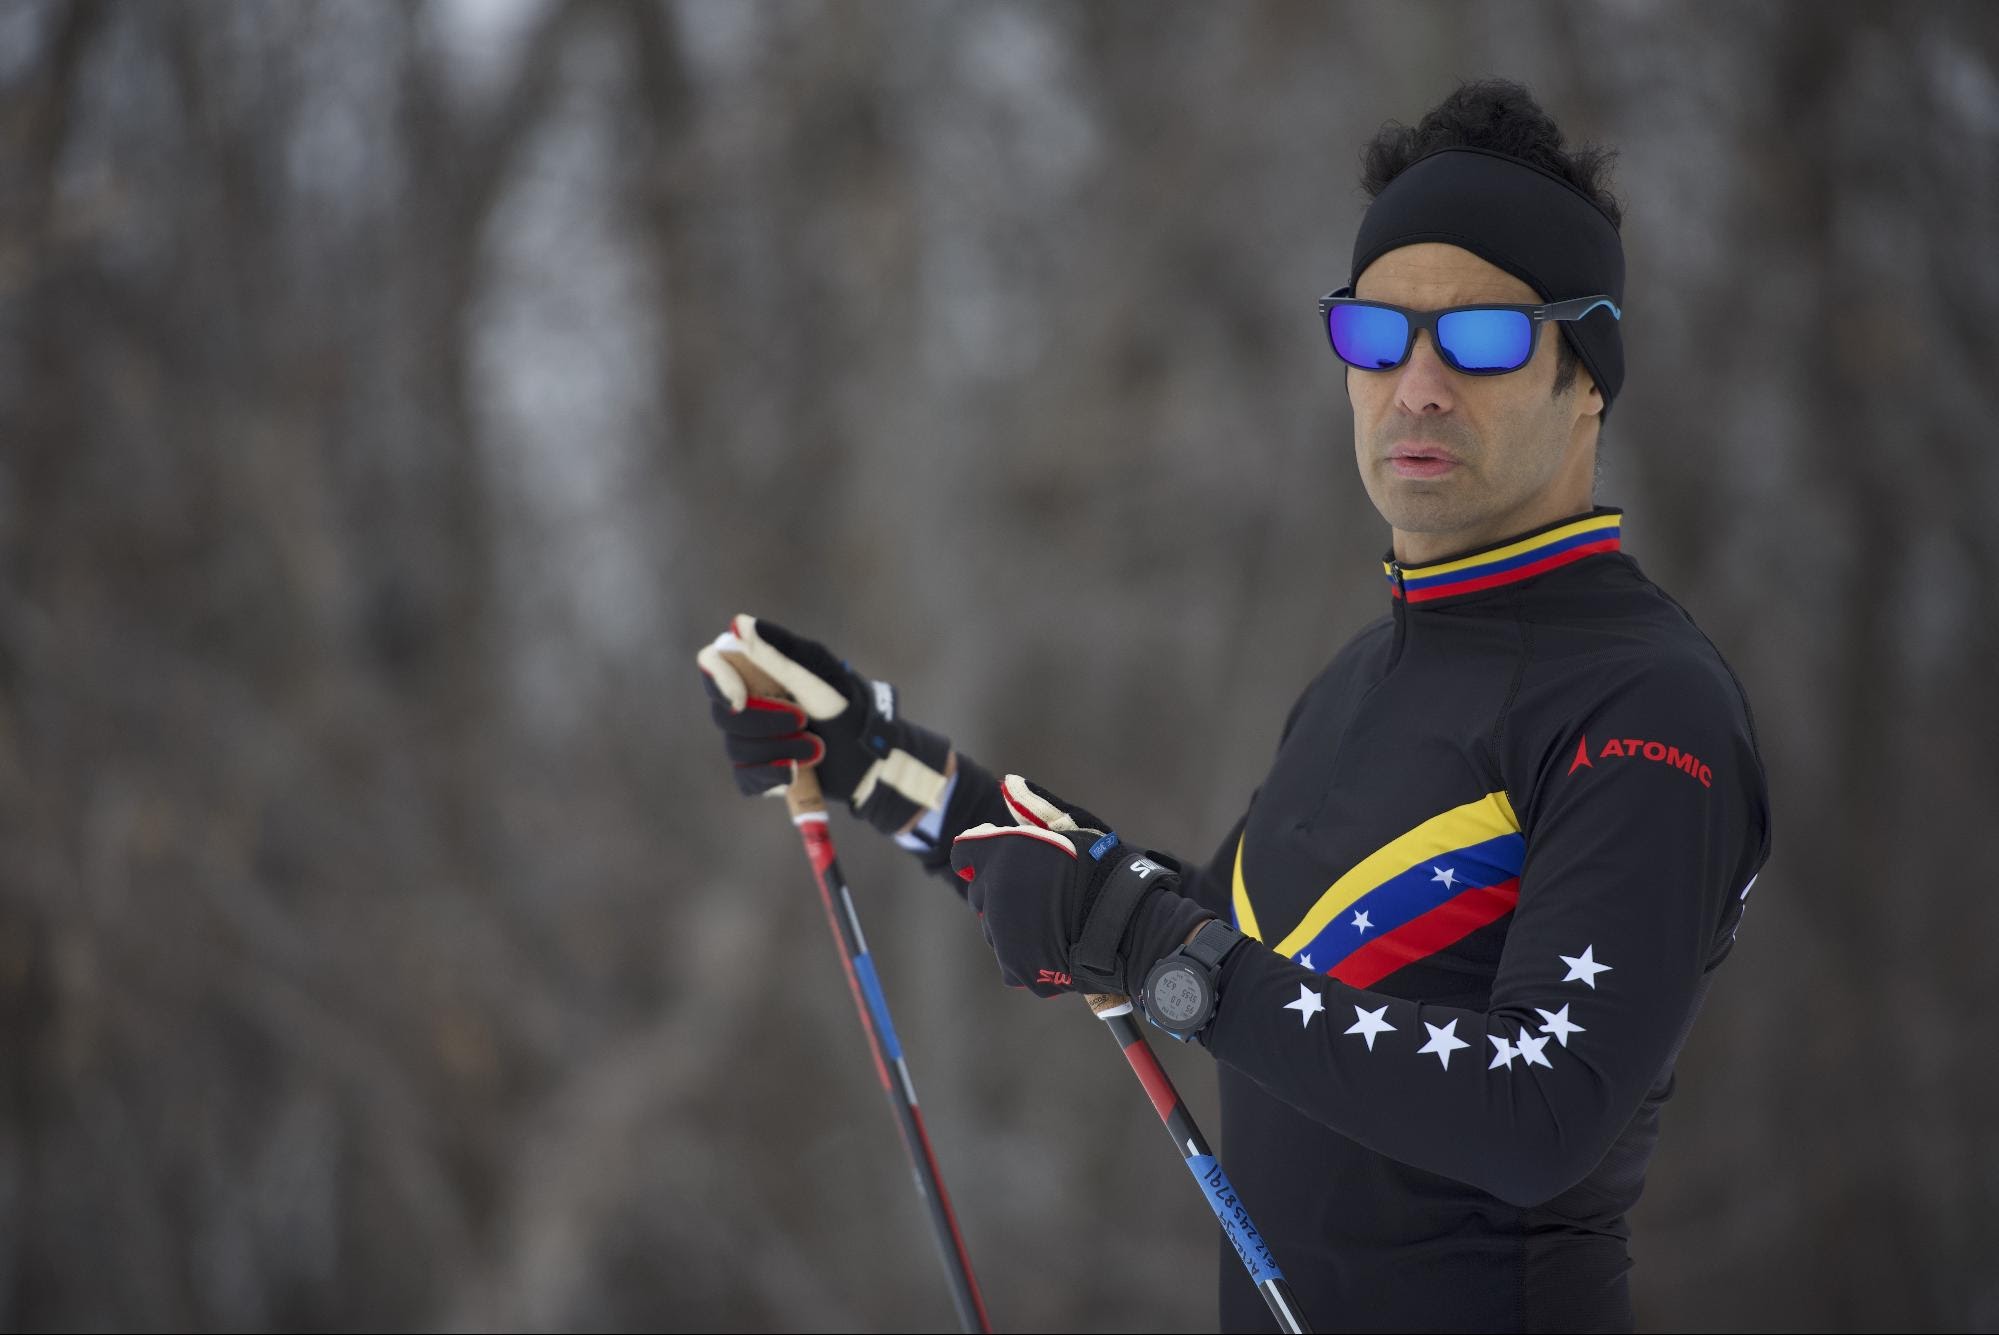 Eduardo Arteaga wearing black ski outfit with Venezuela flag print